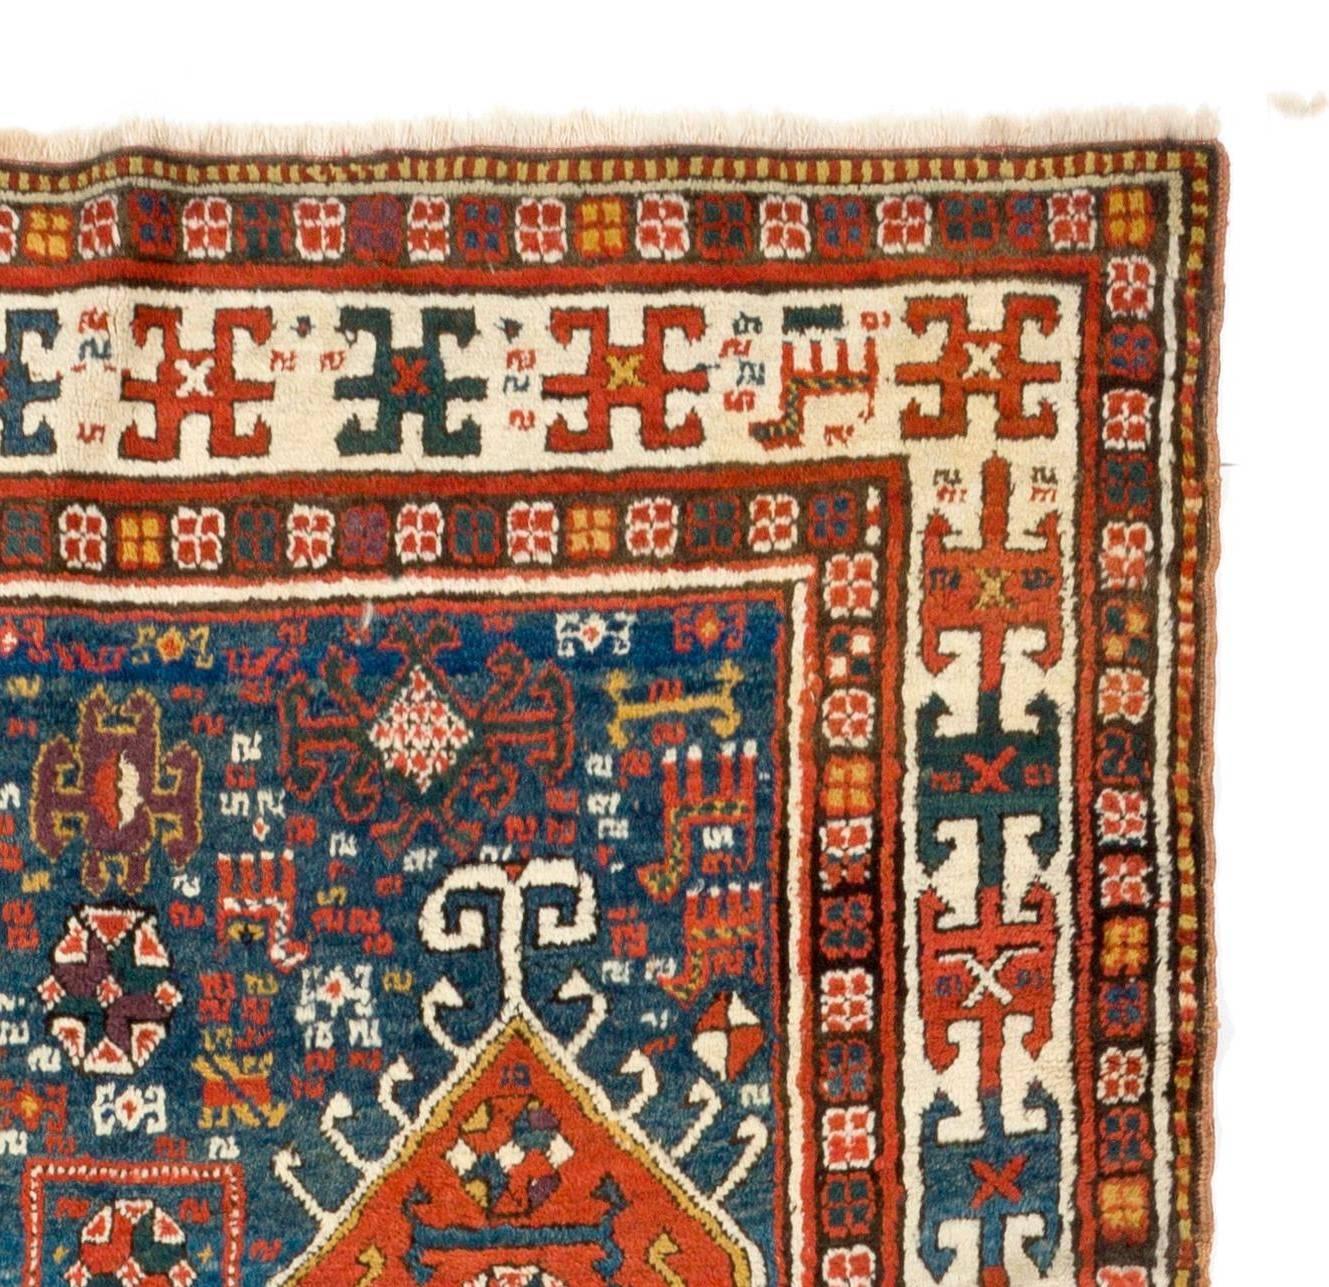 Kazak Antique Caucasian Karabakh Runner Rug, Tribal Carpet, Full Pile. 4.2 x 9.3 ft